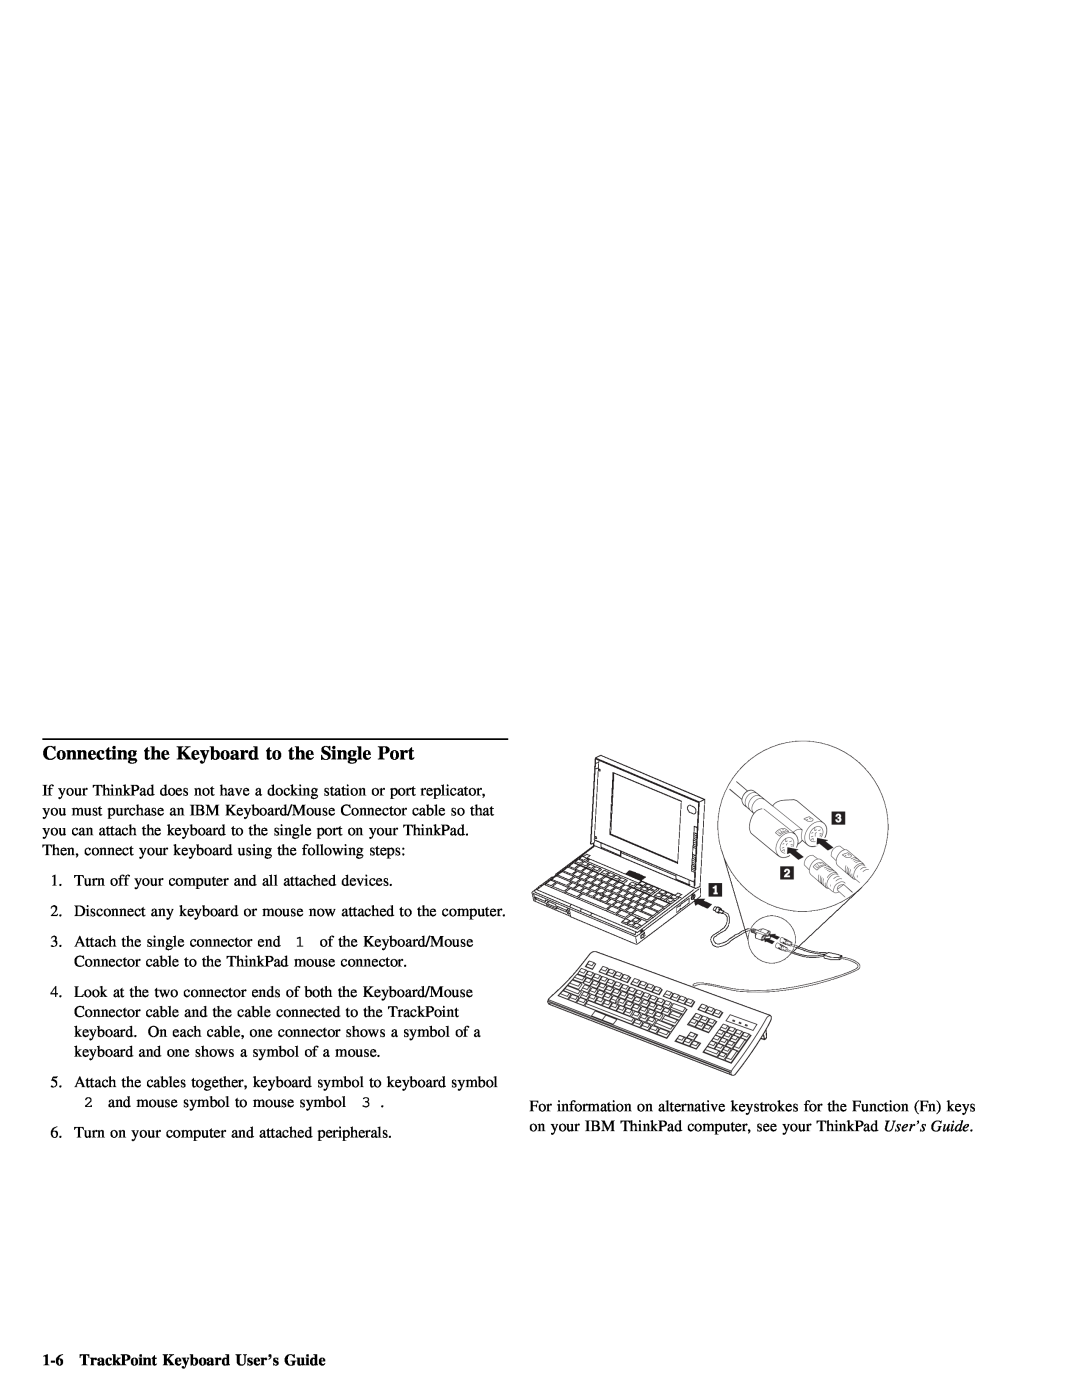 IBM Partner Pavilion manual Port, TrackPoint Keyboard User’s Guide 